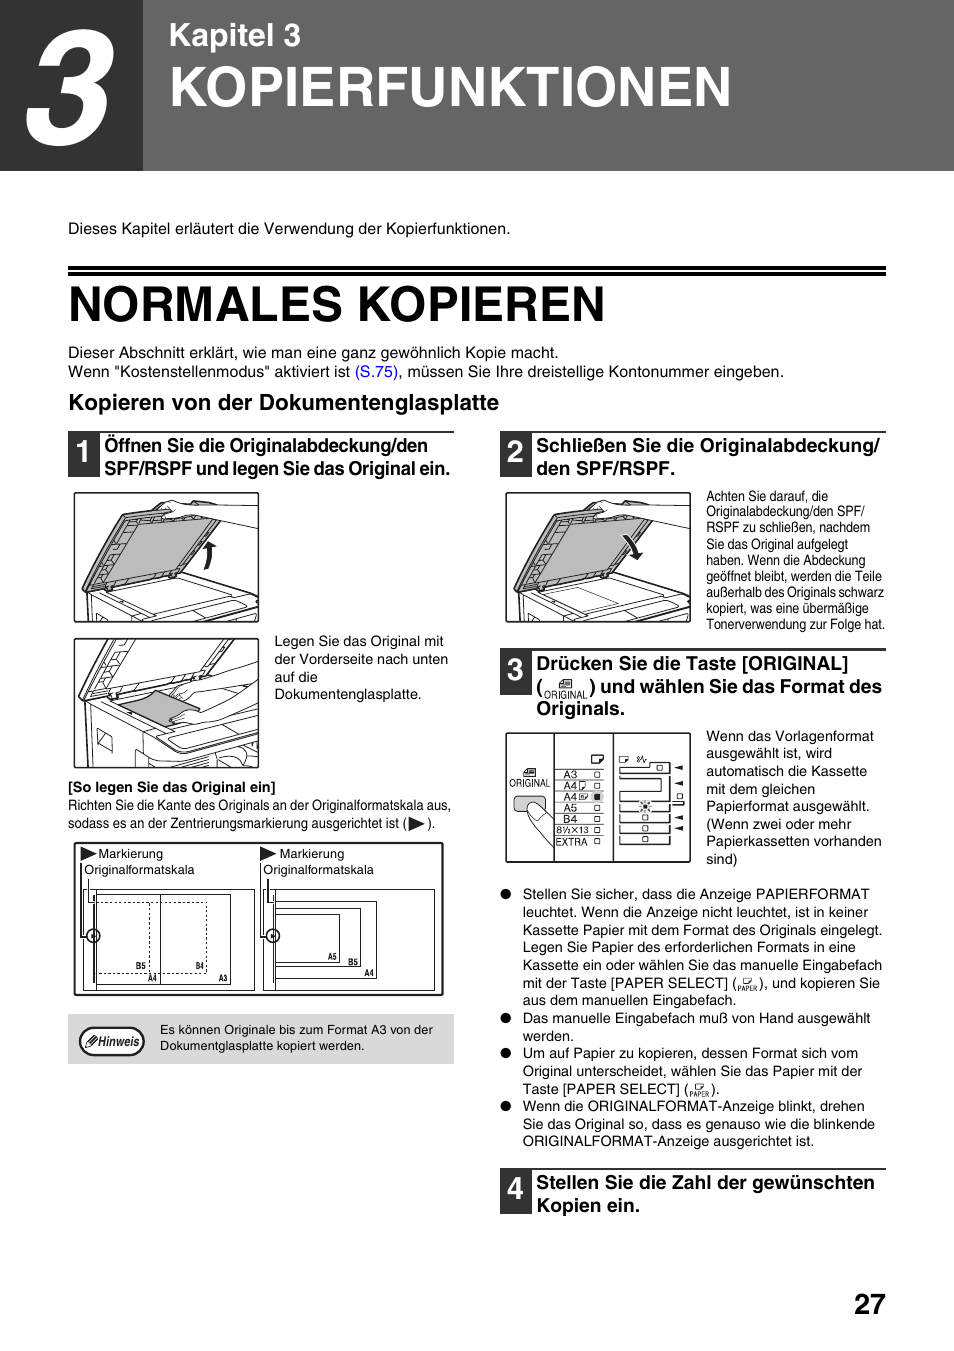 Kopierfunktionen, Normales kopieren, Legen | S.27), Kapitel 3 | Sharp AR-5618 Benutzerhandbuch | Seite 29 / 108